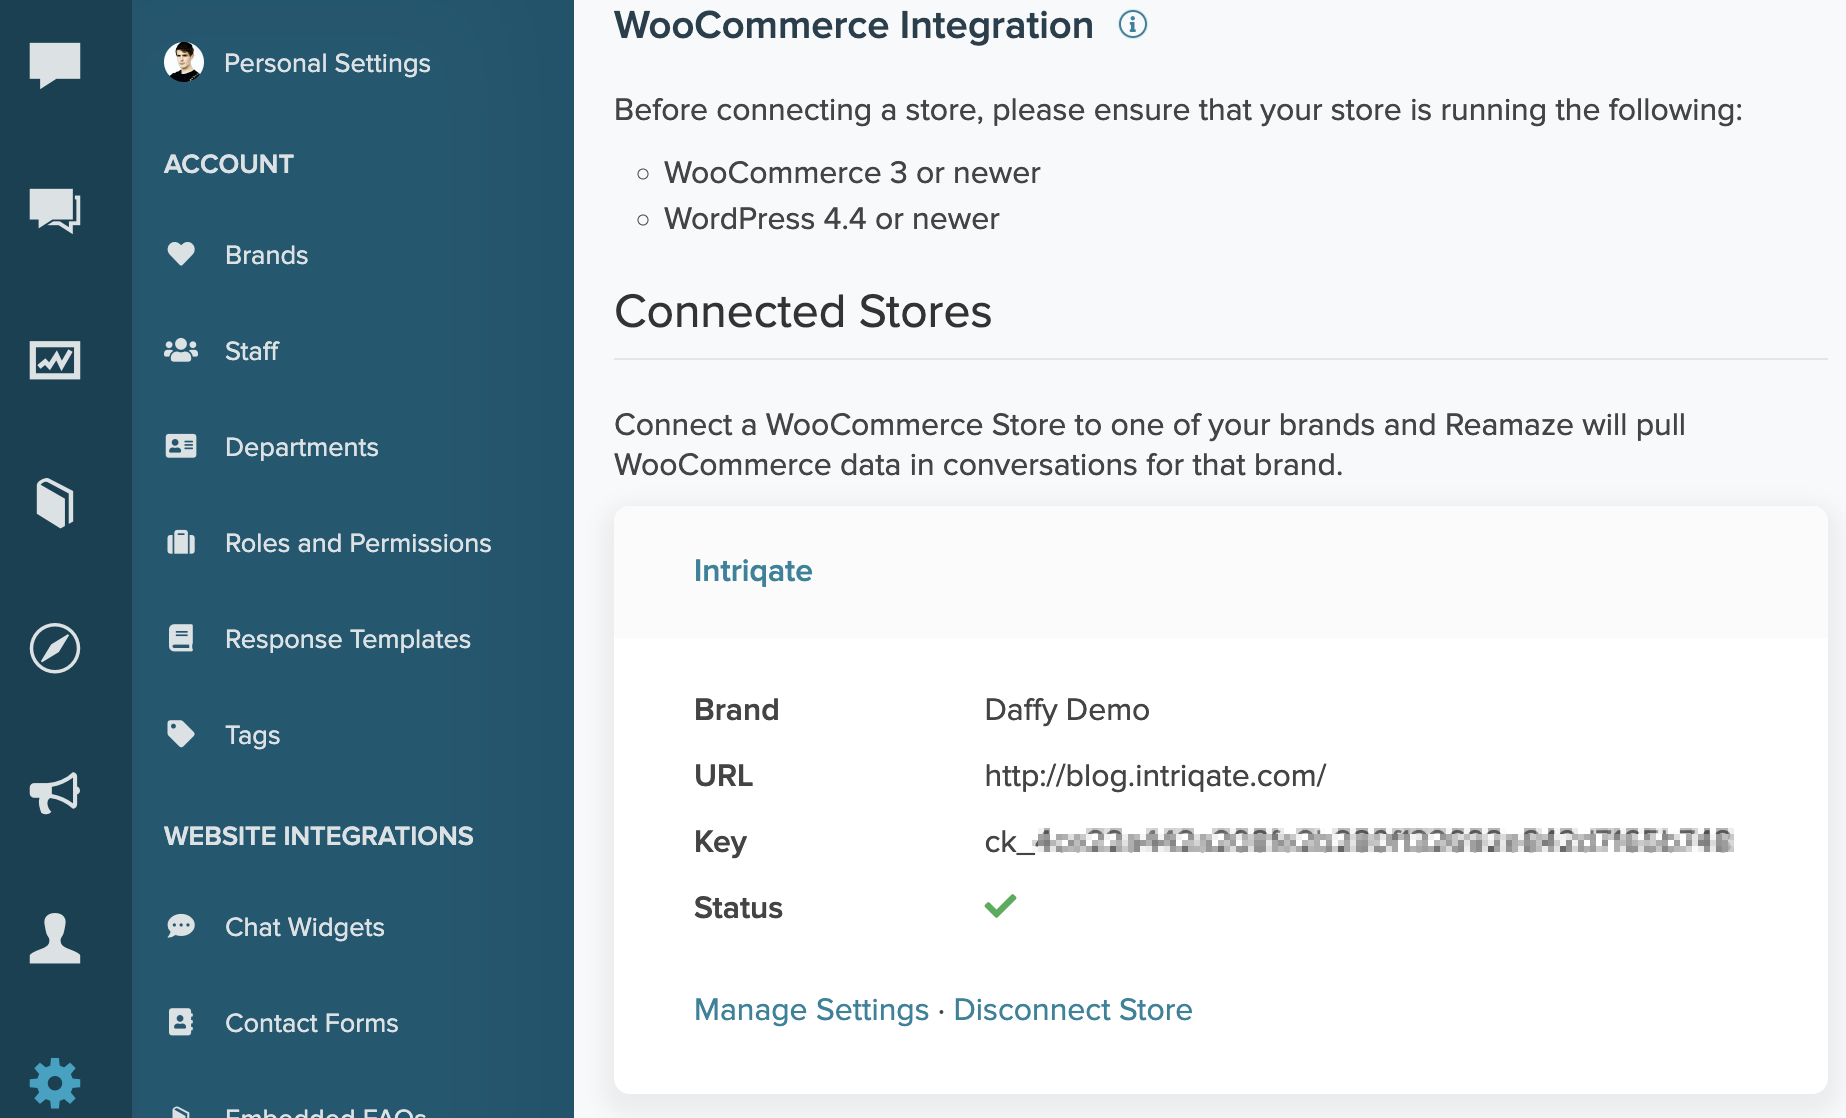 woocommerce-integration-settings.png